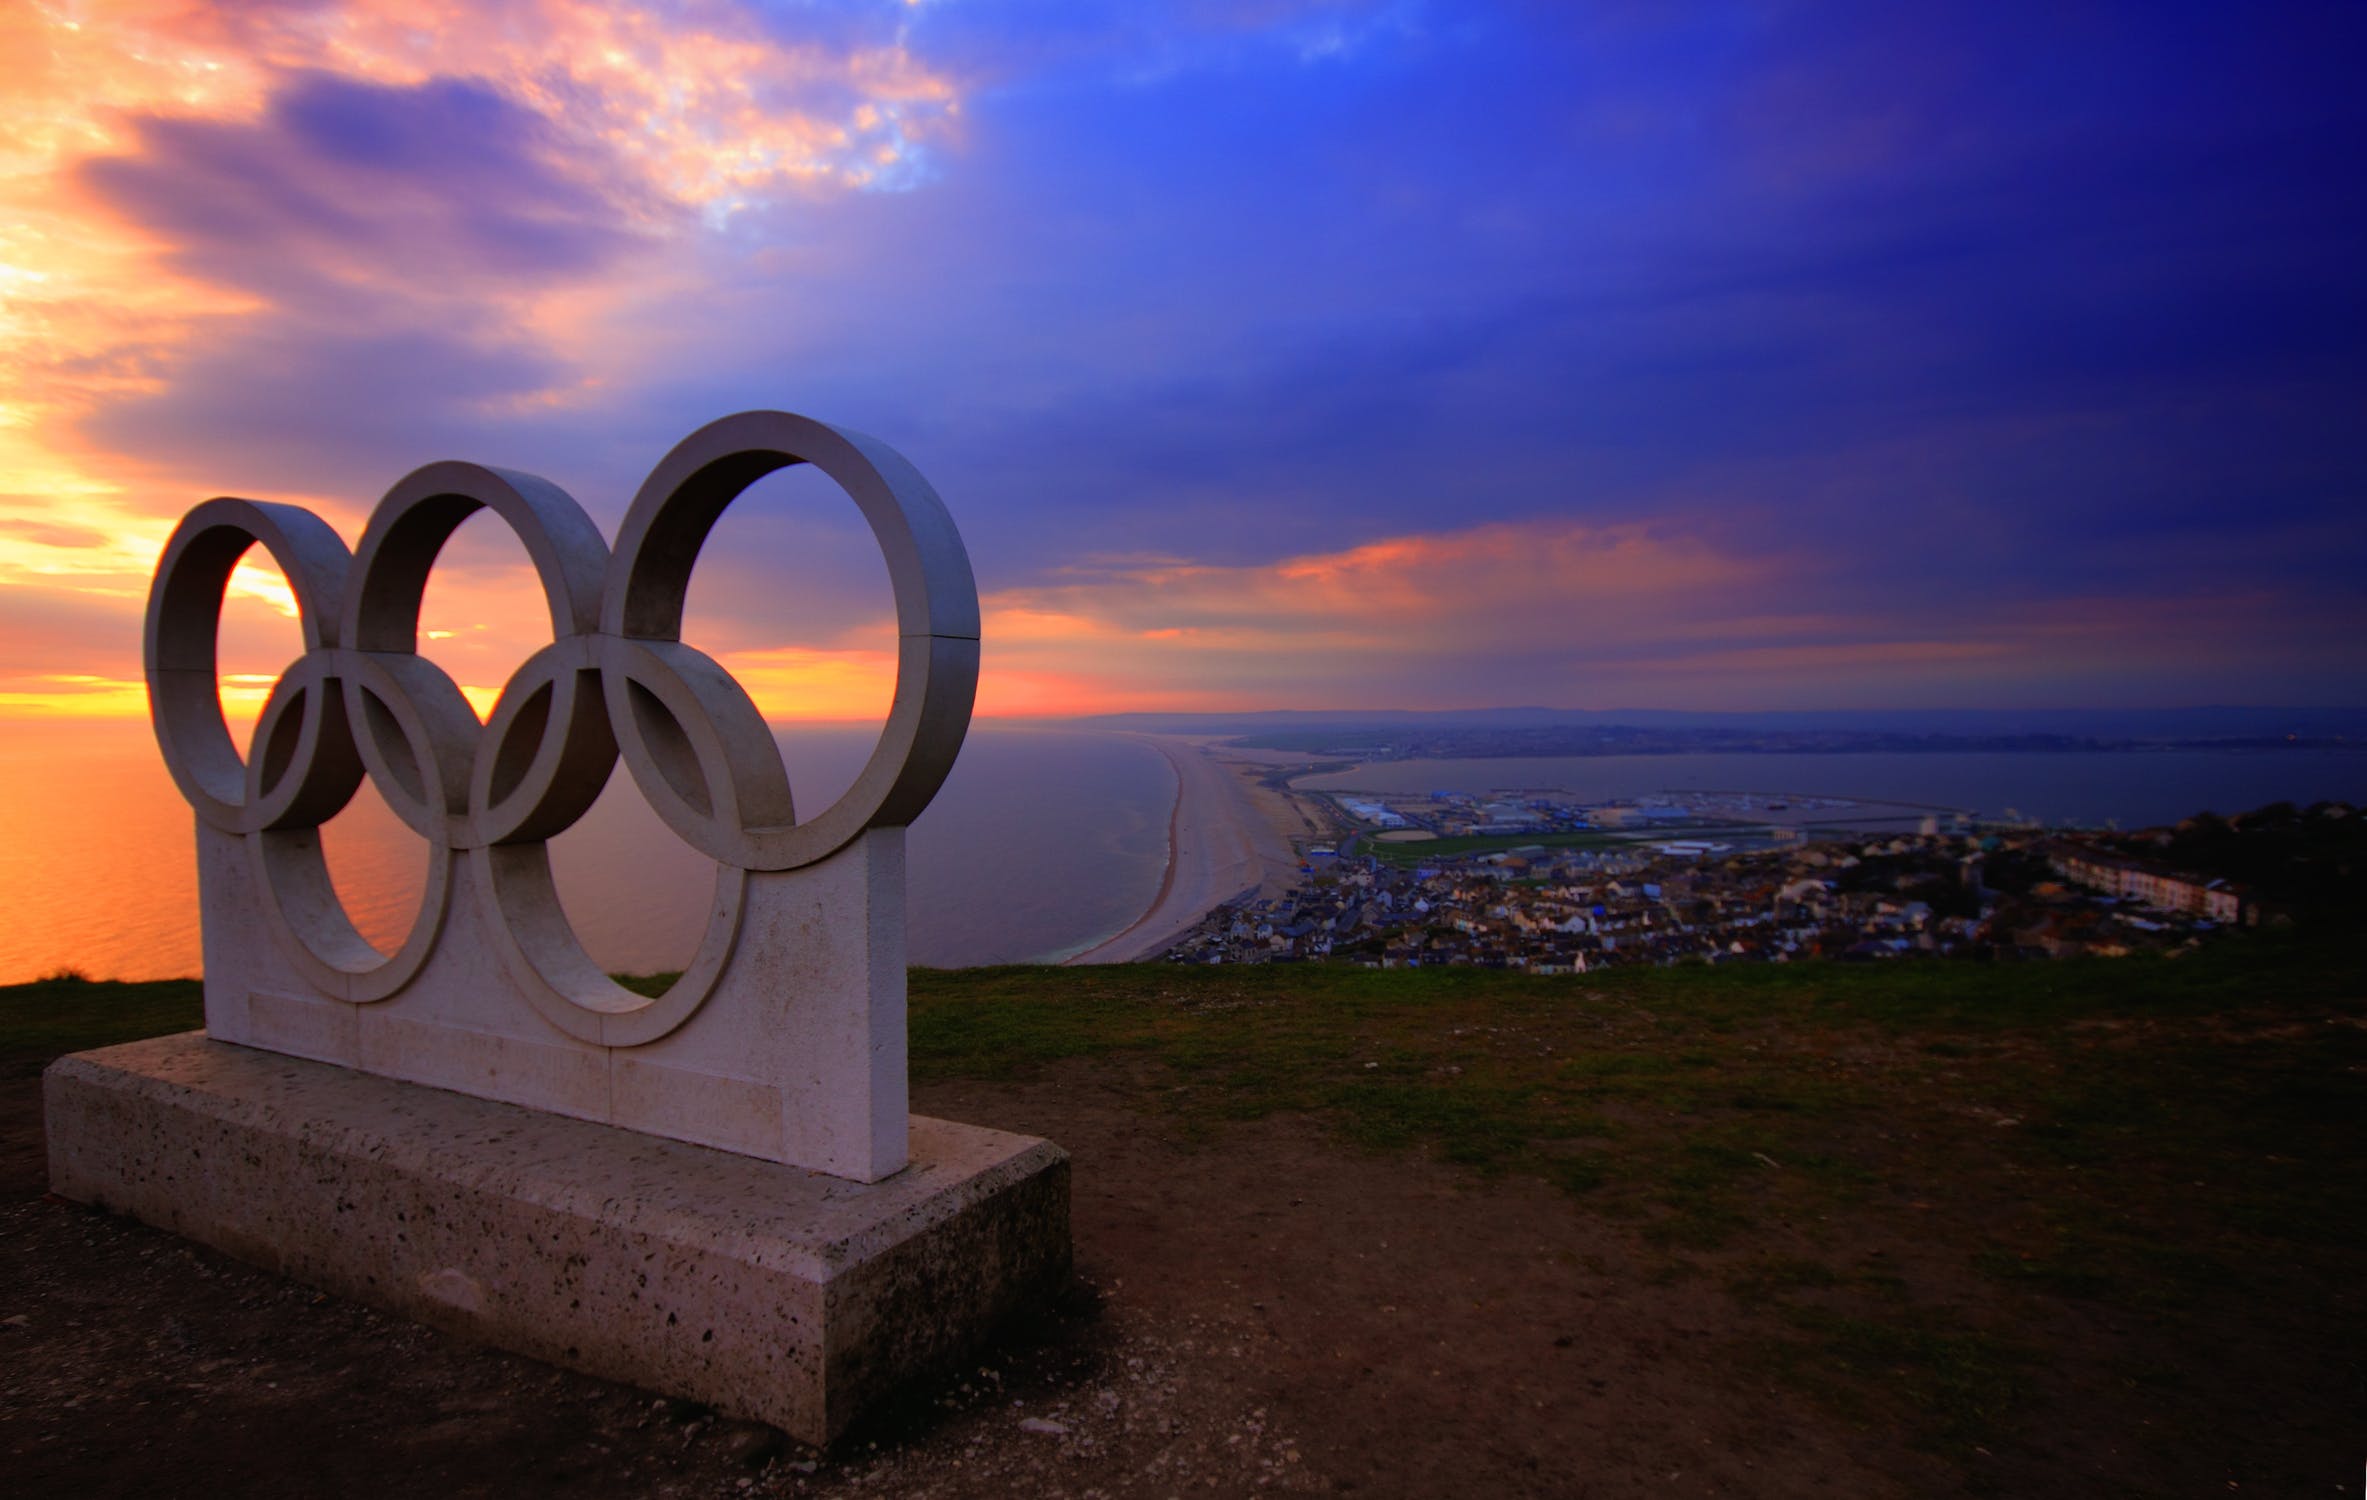 COI condena "violação da trégua olímpica" após Rússia invadir Ucrânia